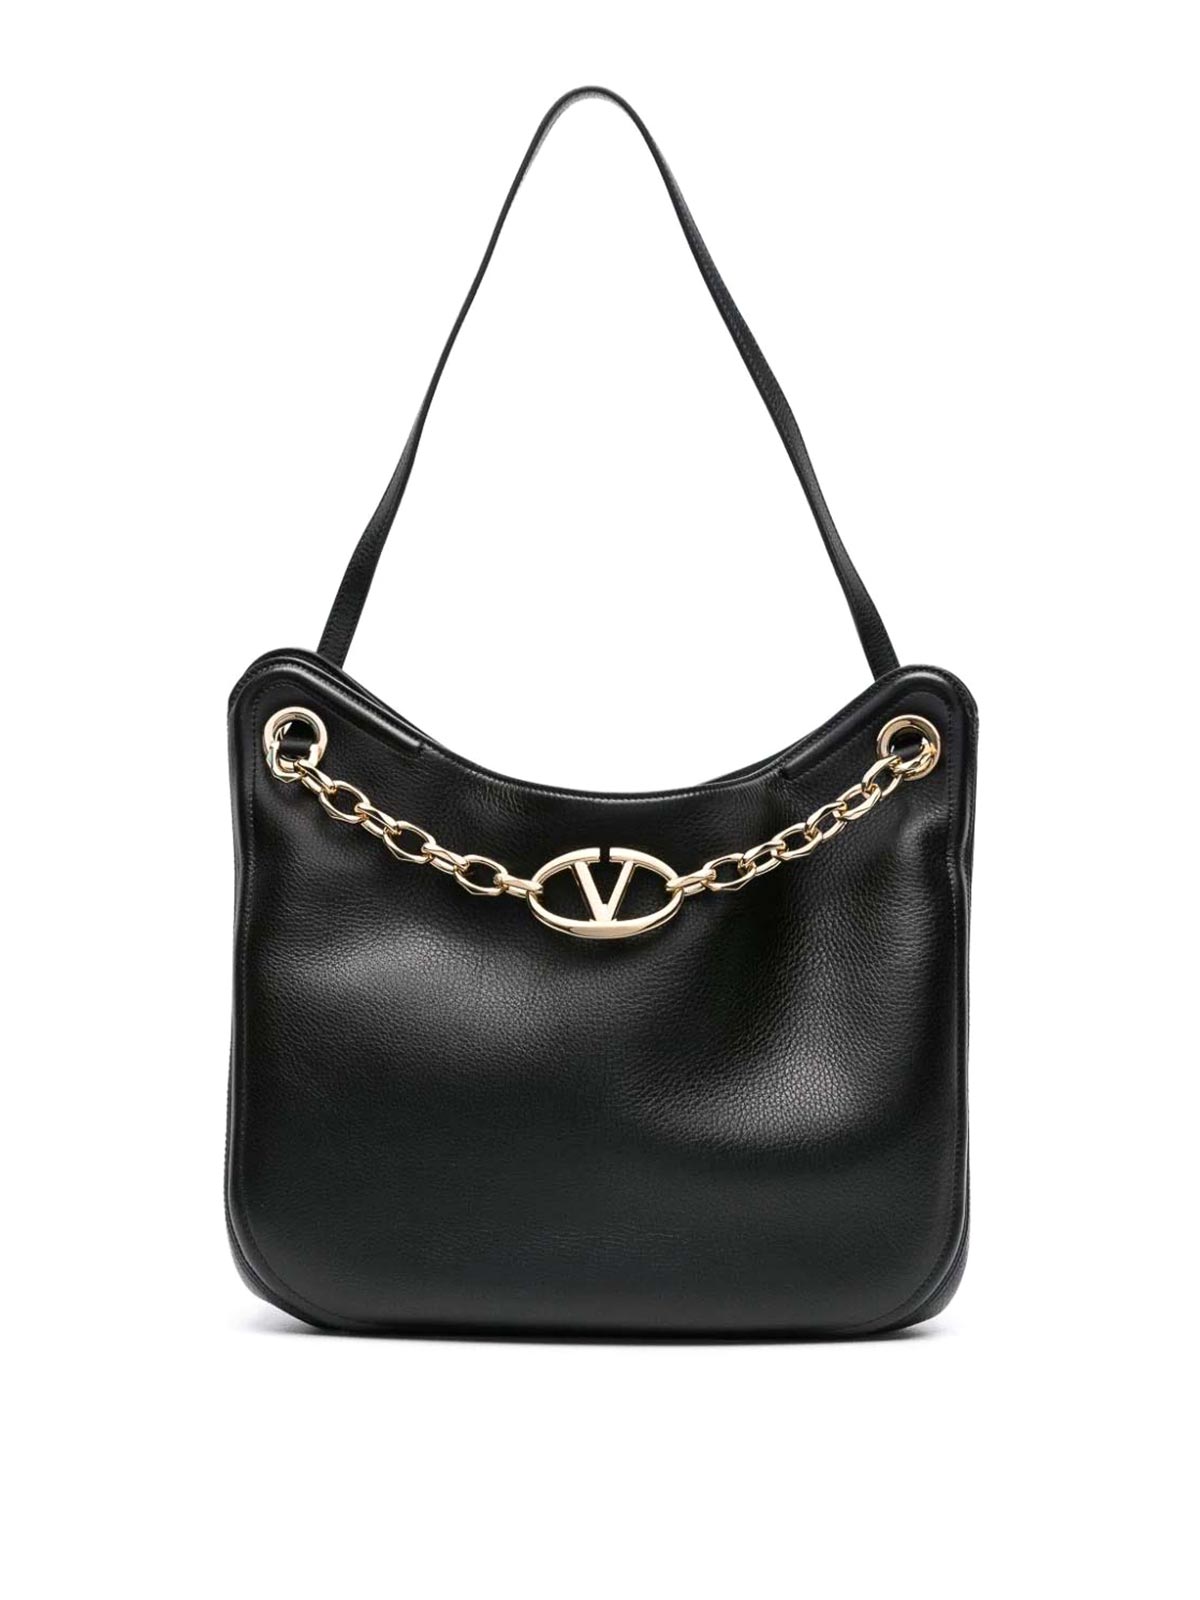 Valentino Garavani Chain Hobo Bag In Black